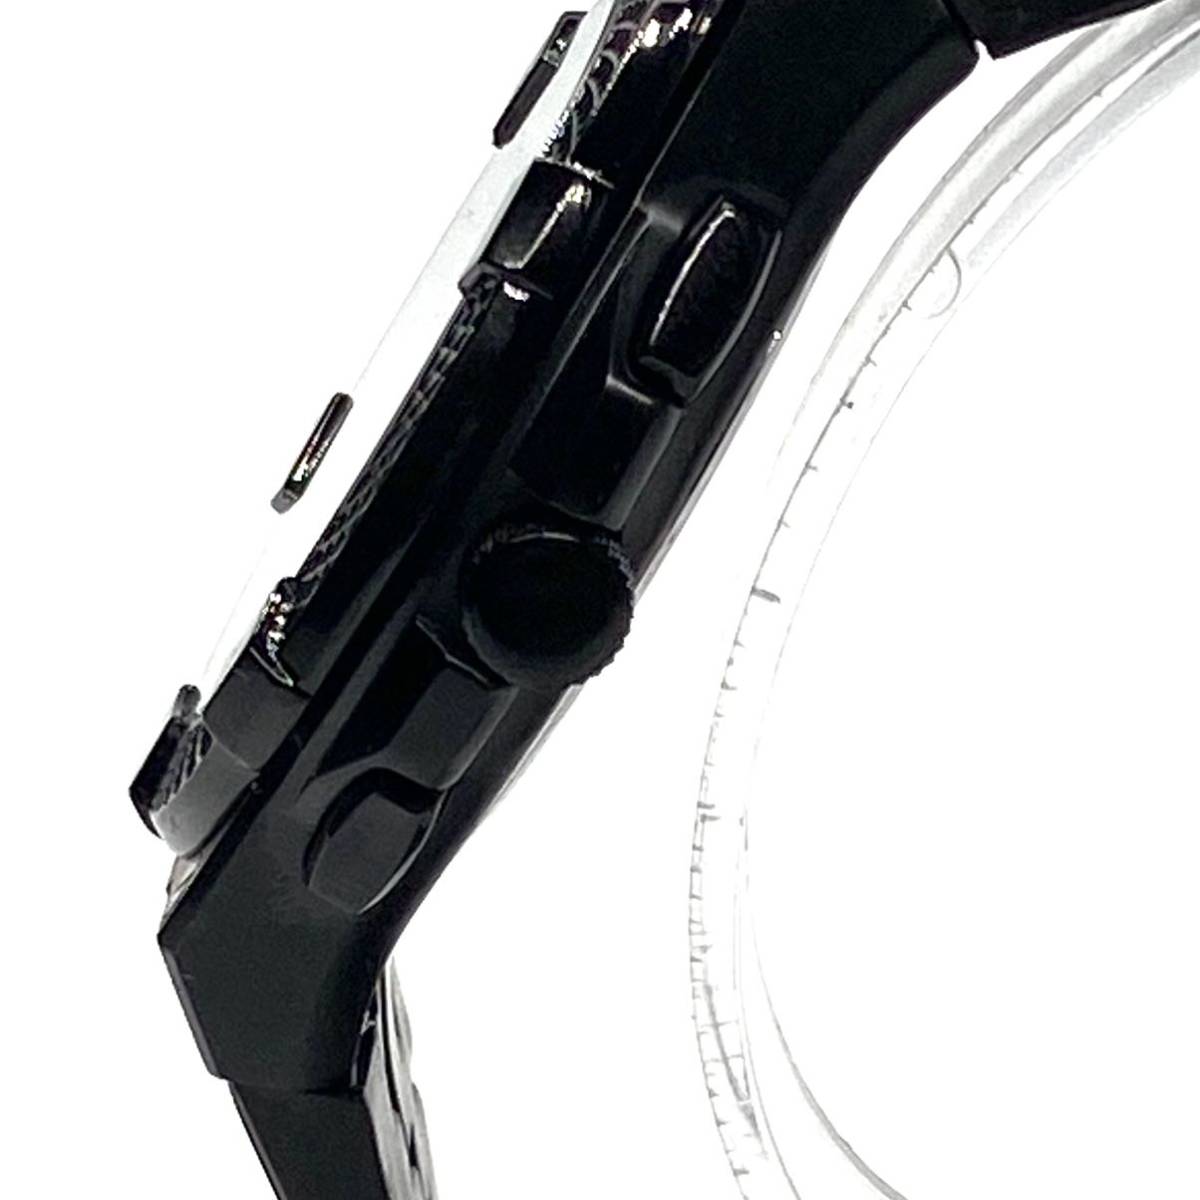 【漂う高級感!】Versus Versace ヴェルサス ヴェルサーチ メンズ クロノグラフ クォーツ 腕時計 イタリア 高級ブランド ブラック 新品即納